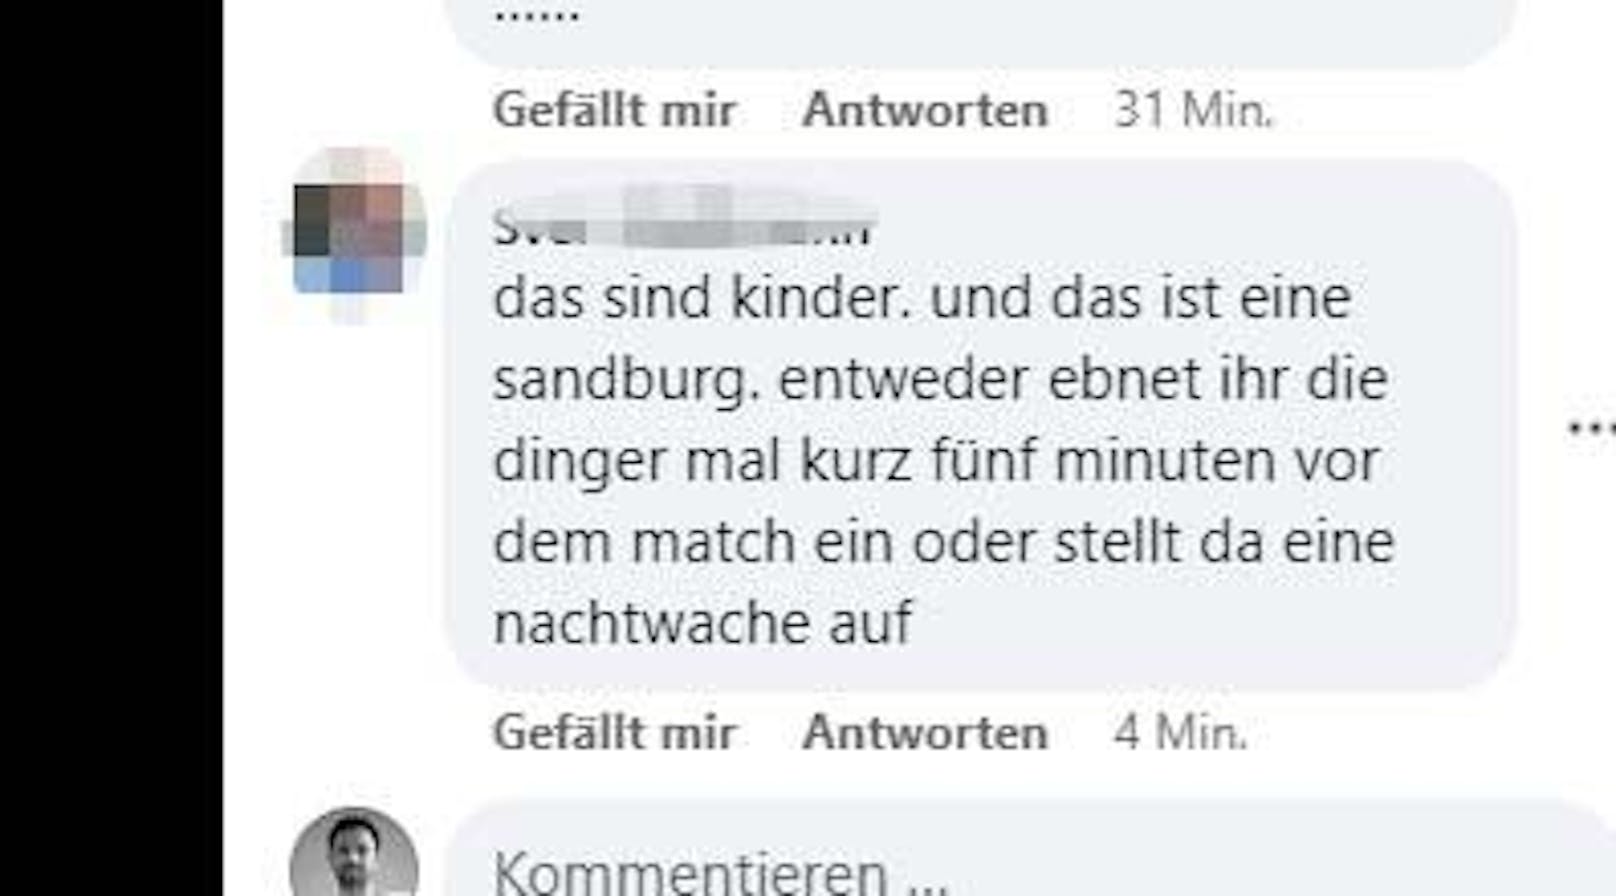 Zahlreiche User reagierten sehr kritisch auf das Posting der Stadtgemeinde Gmunden.